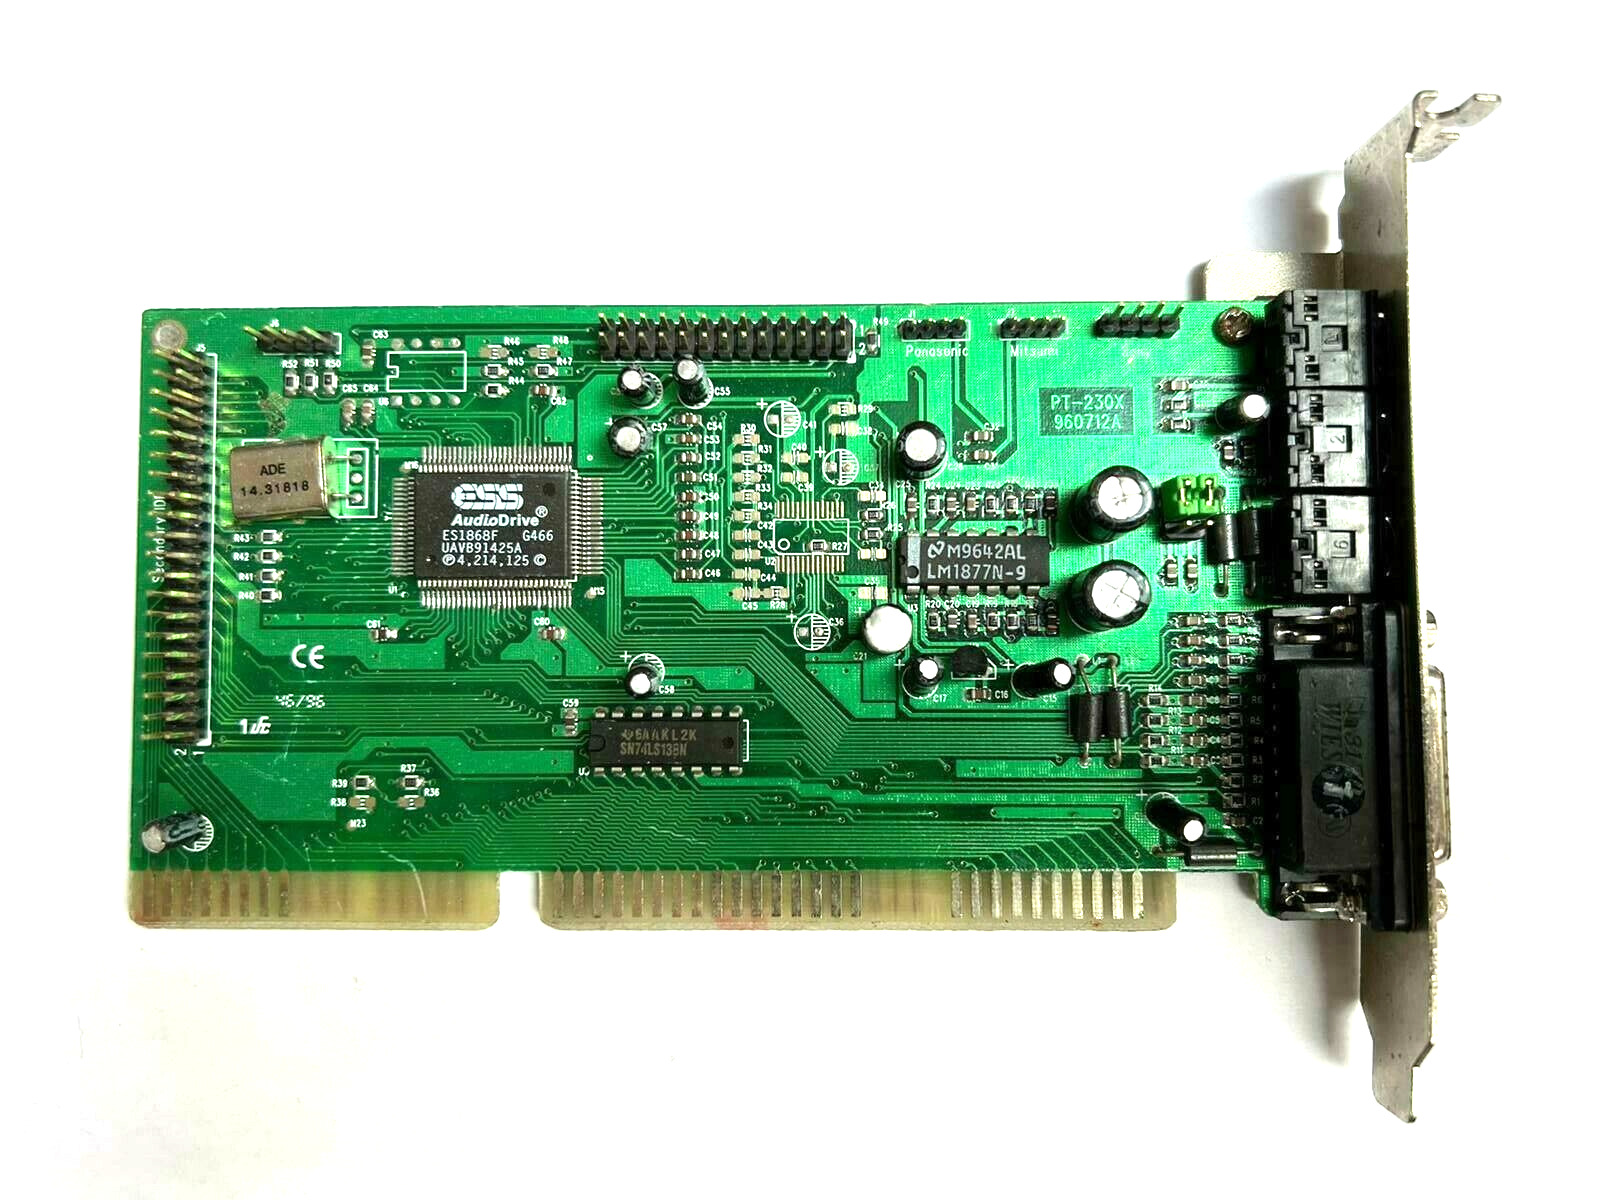 Pine PT230X ISA 16-bit ESS ES1868, 1996 sound card retro